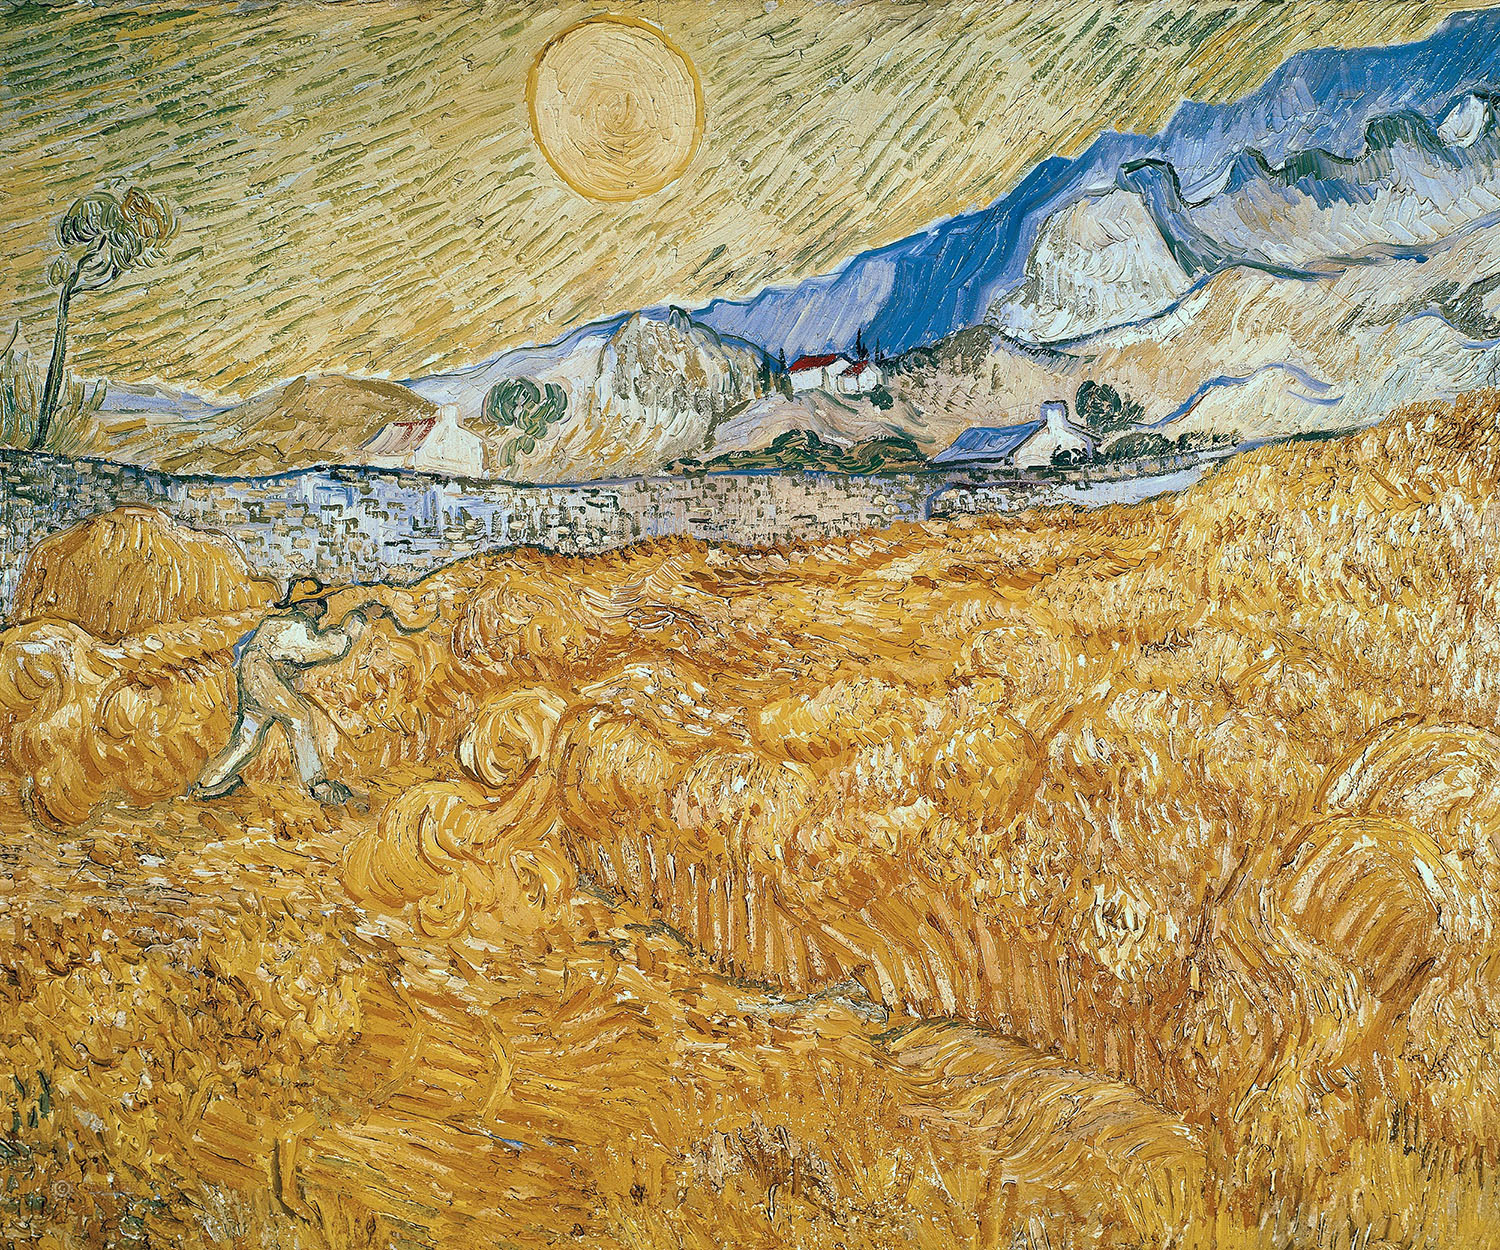 Винсент Ван Гог. "Пшеничное поле со жнецом и восходом солнца". 1889. Музей Фолькванг, Эссен.